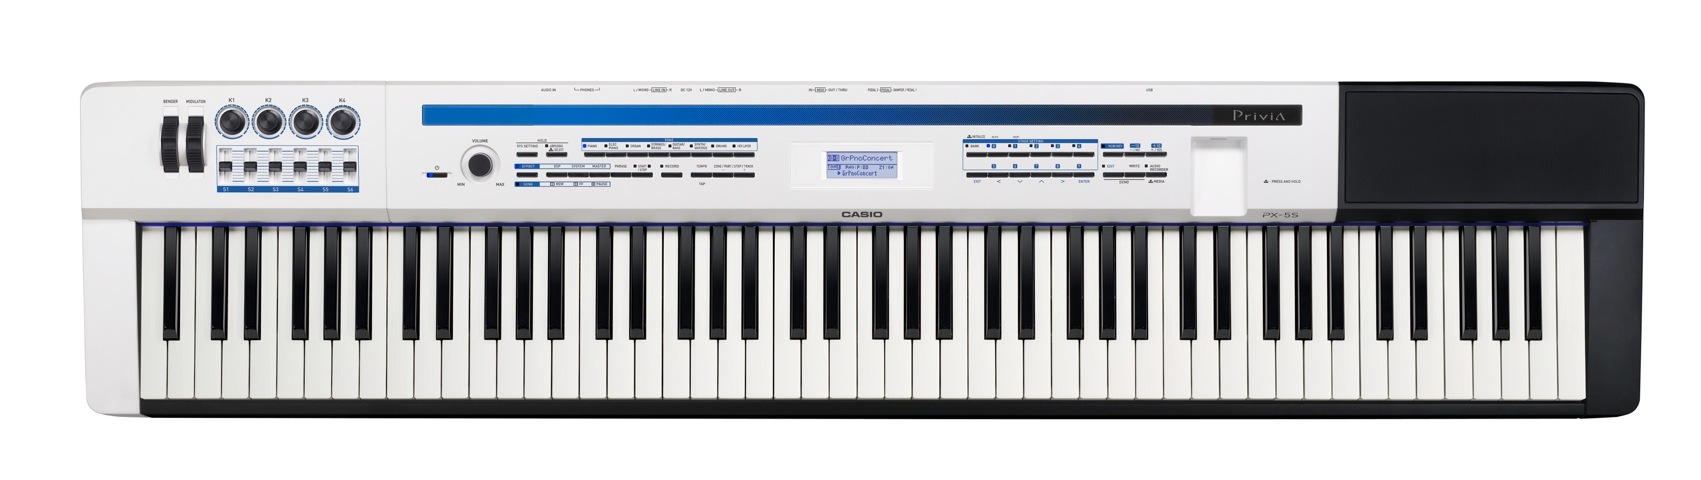 Casio Casio PX-5S Privia PRO Digital Stage Piano